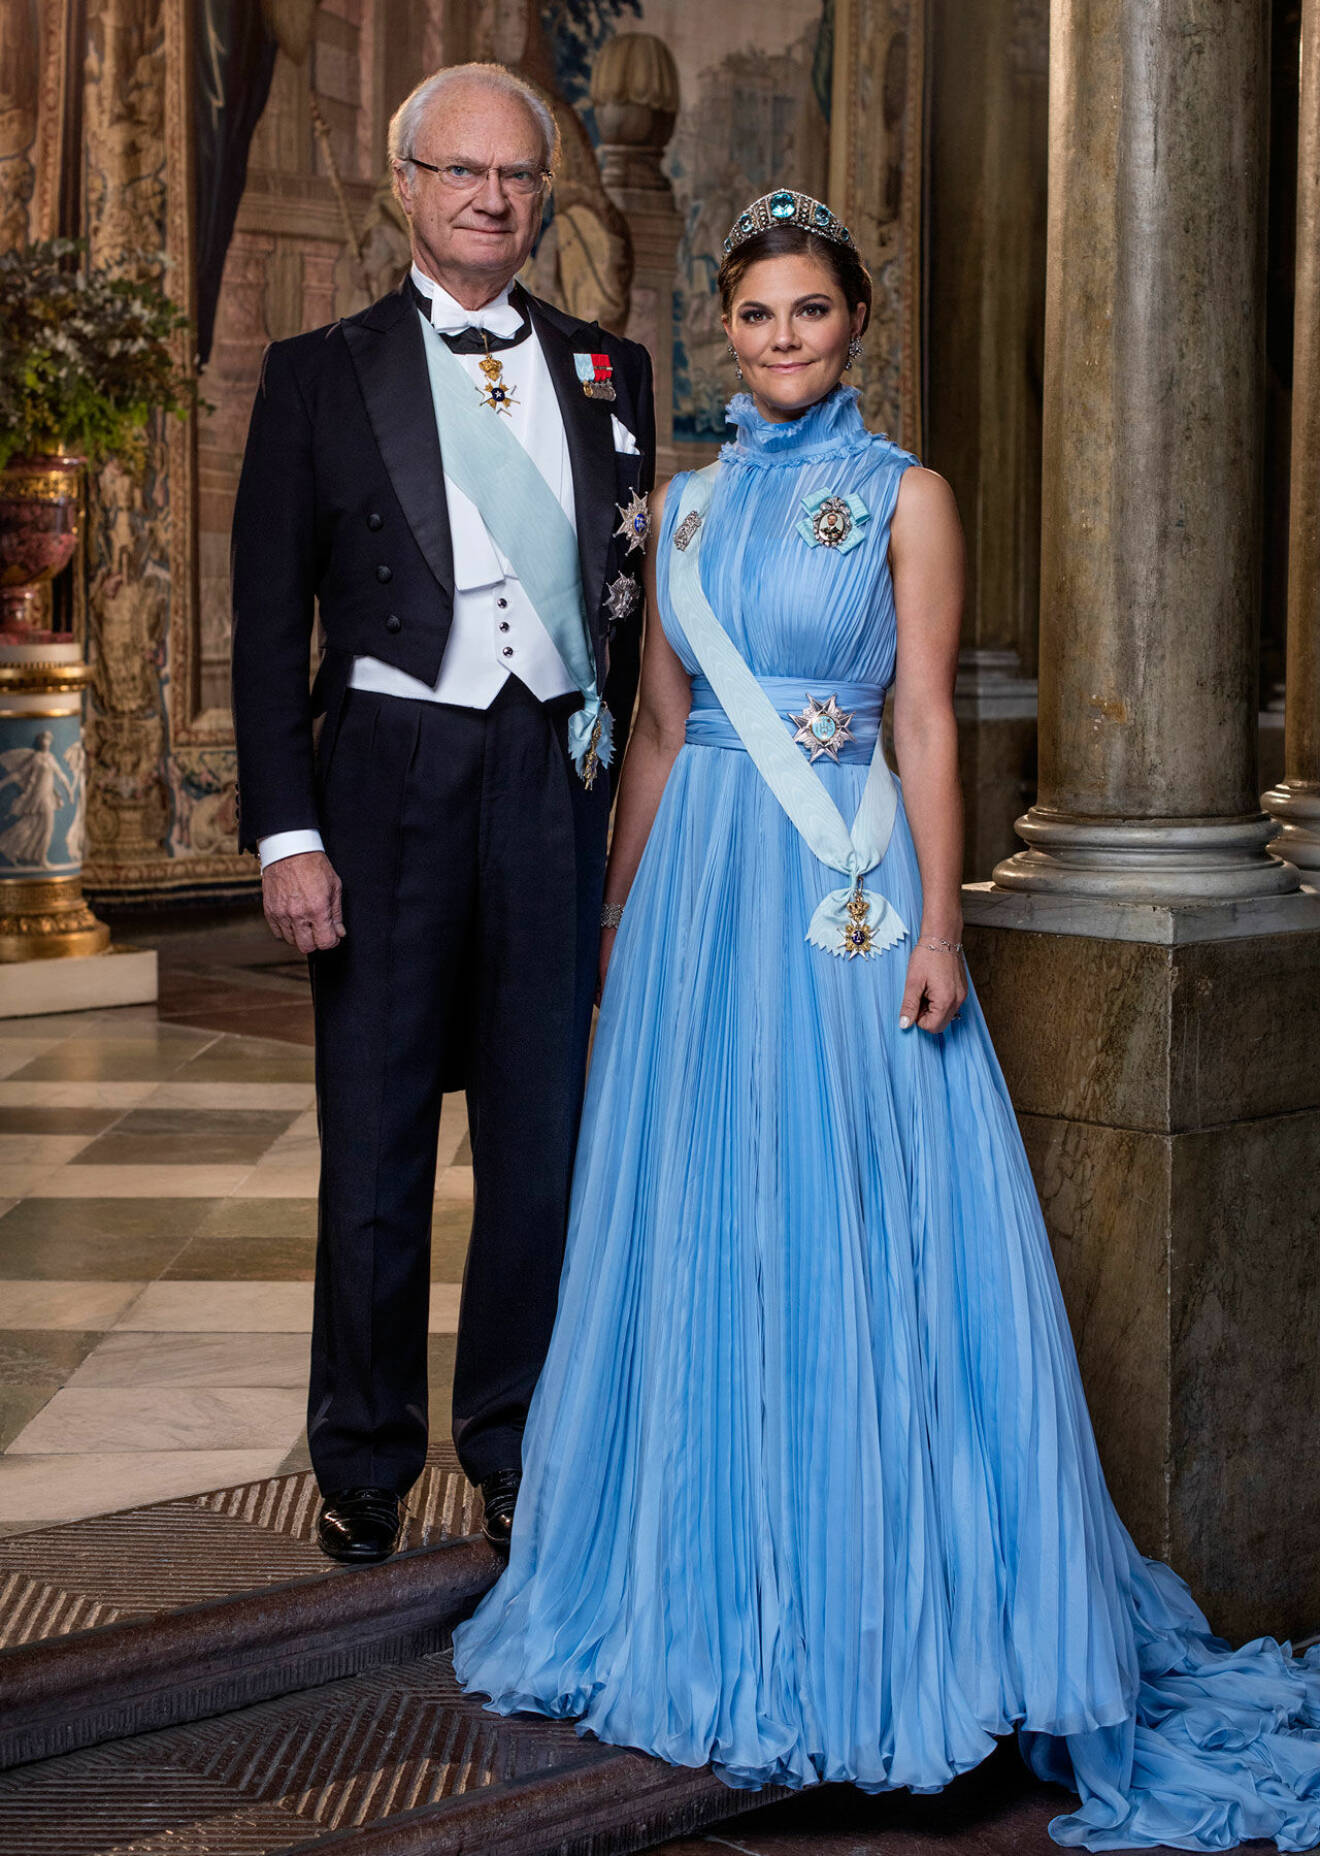 Kungen och kronprinsessan Victoria på hovets officiella bild.